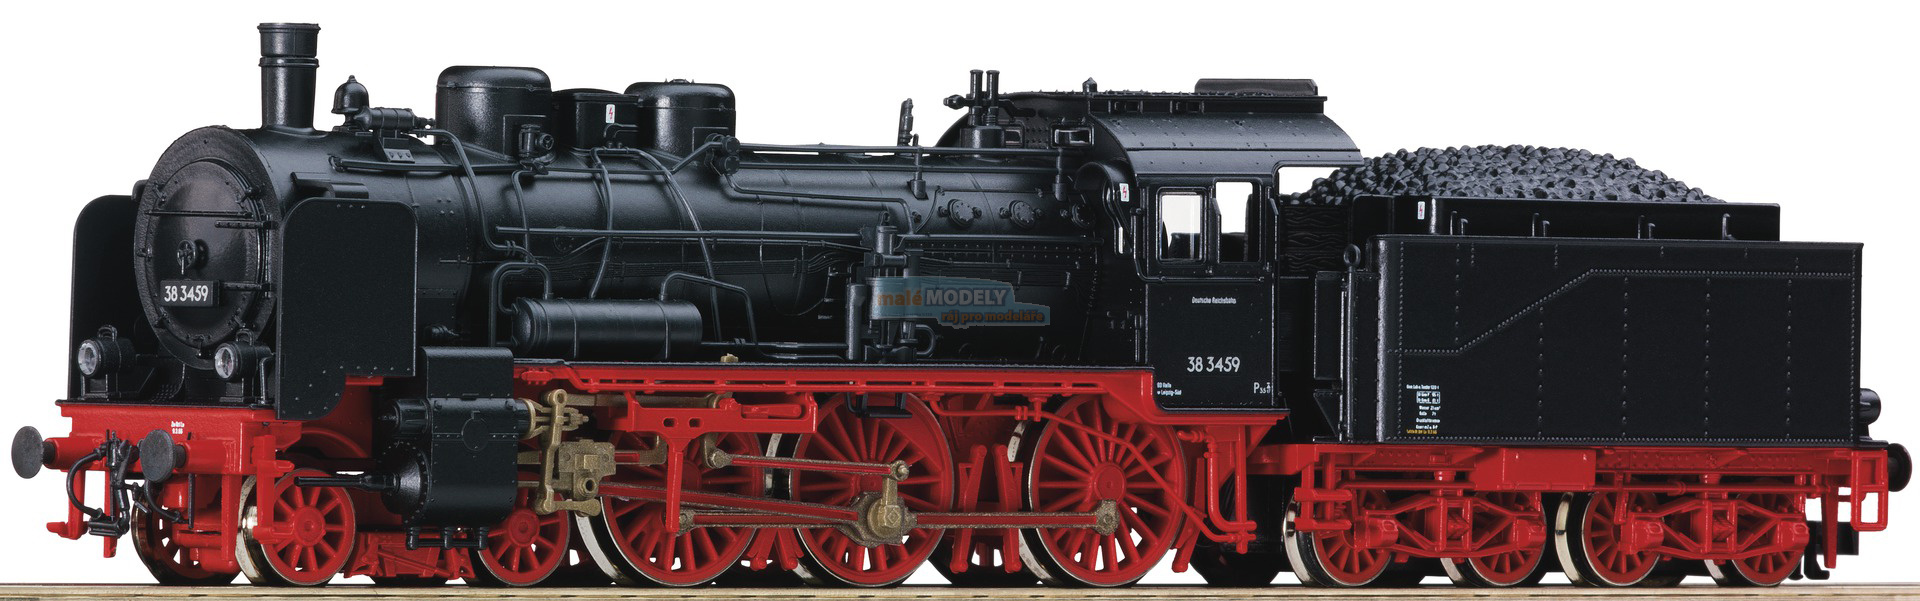 Parní lokomotiva BR 38